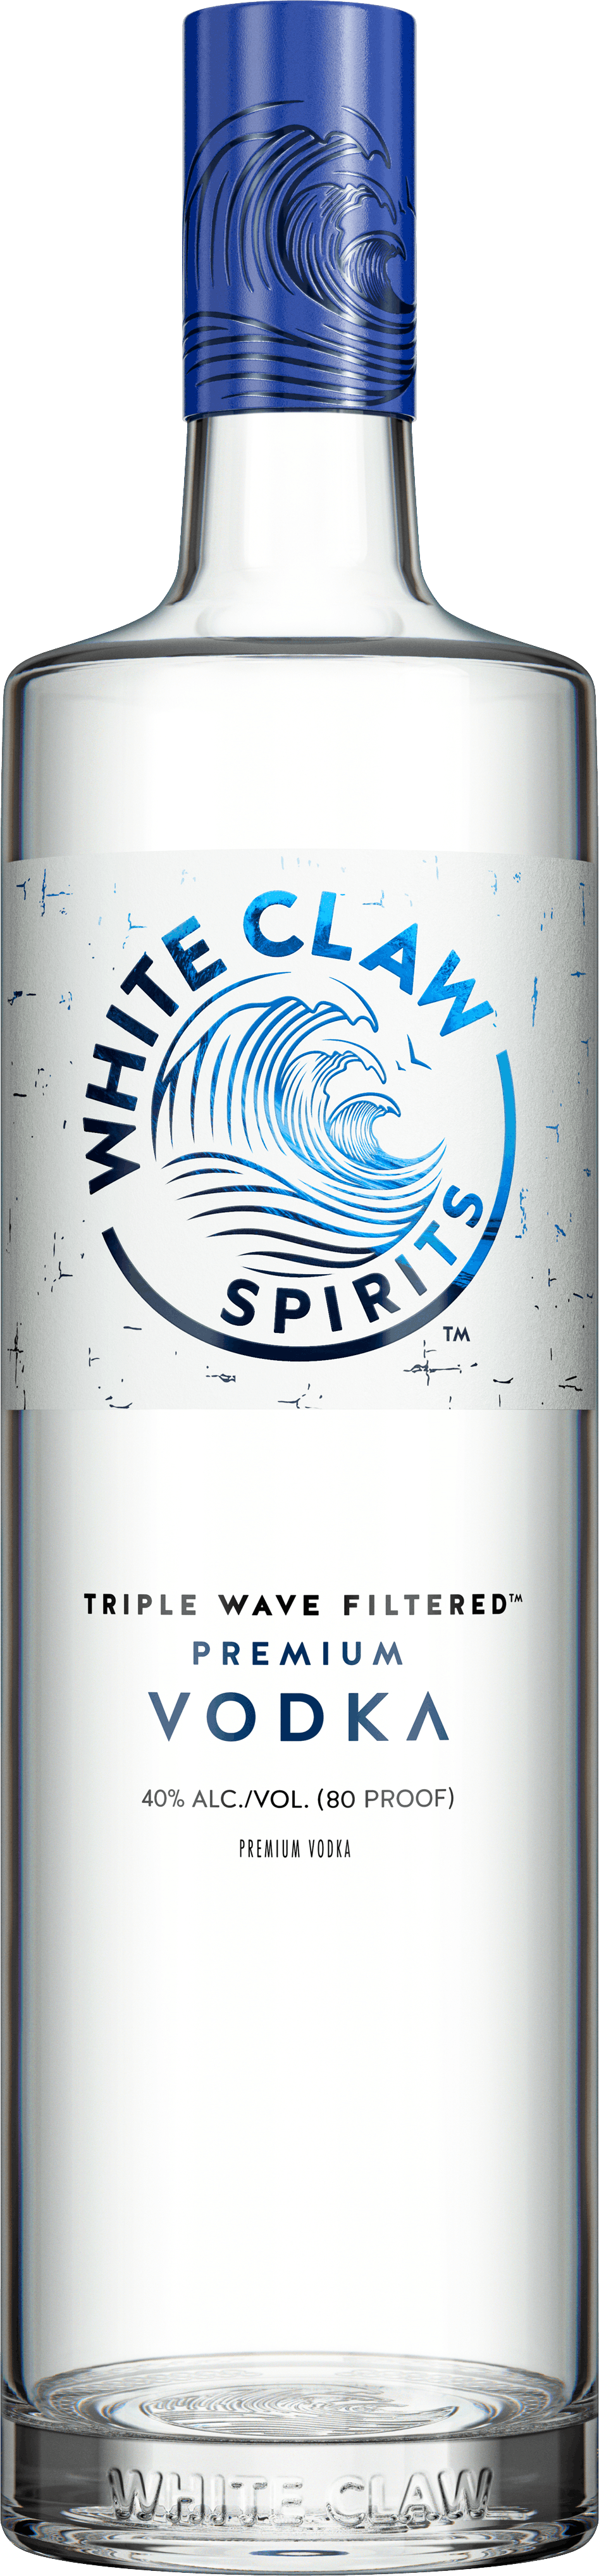 Vodka White Claw™ Premium. La botella está sobre la imagen de una ola que rompe.		